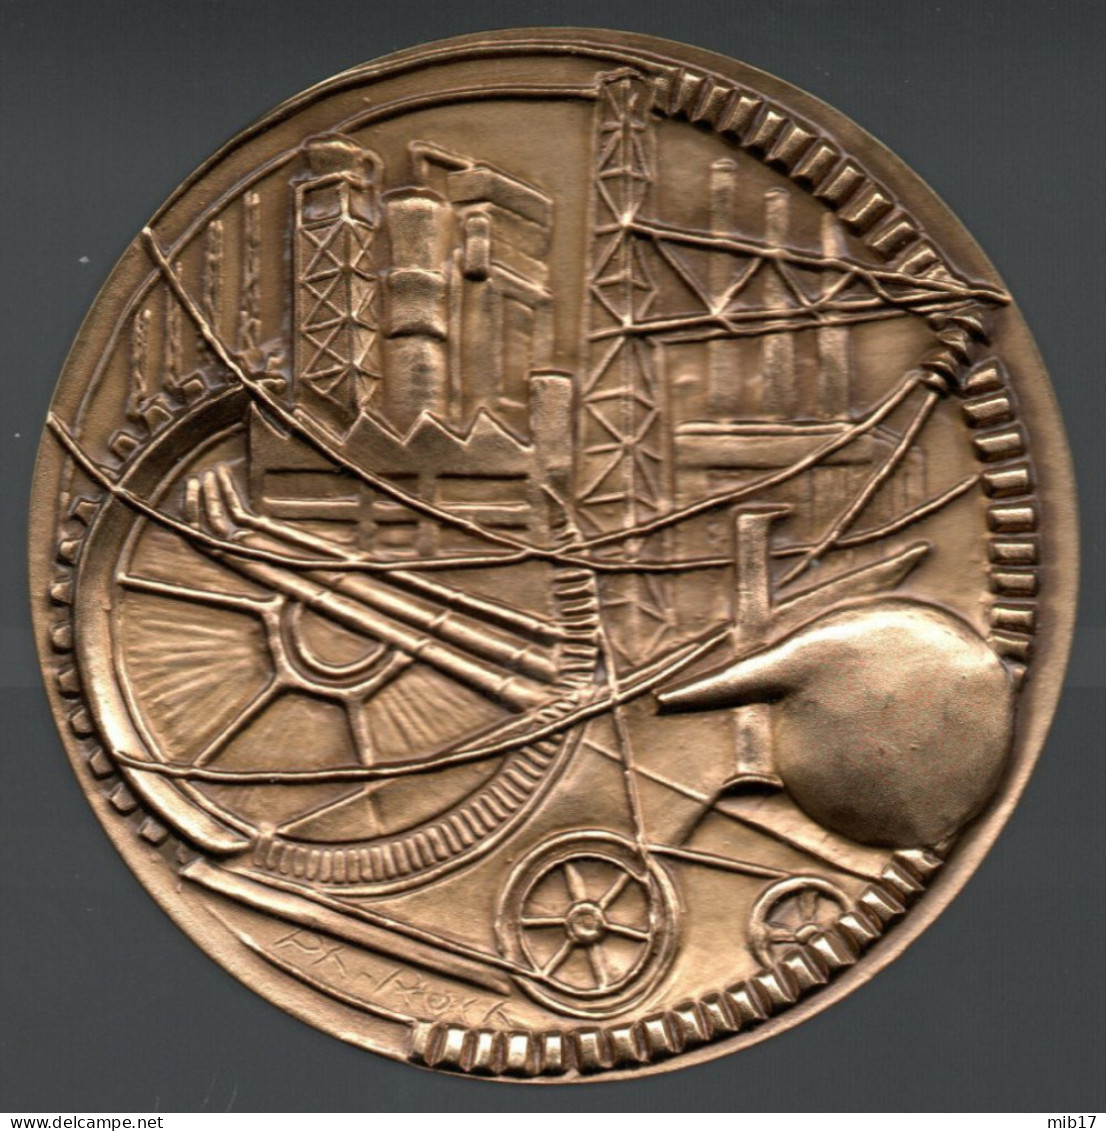 Médaille Du Travail En Bronze ARTHUS BERTRAND - Industrie Par Le Graveur J-P ROCH - Diamètre 57 Mm - Professionali / Di Società